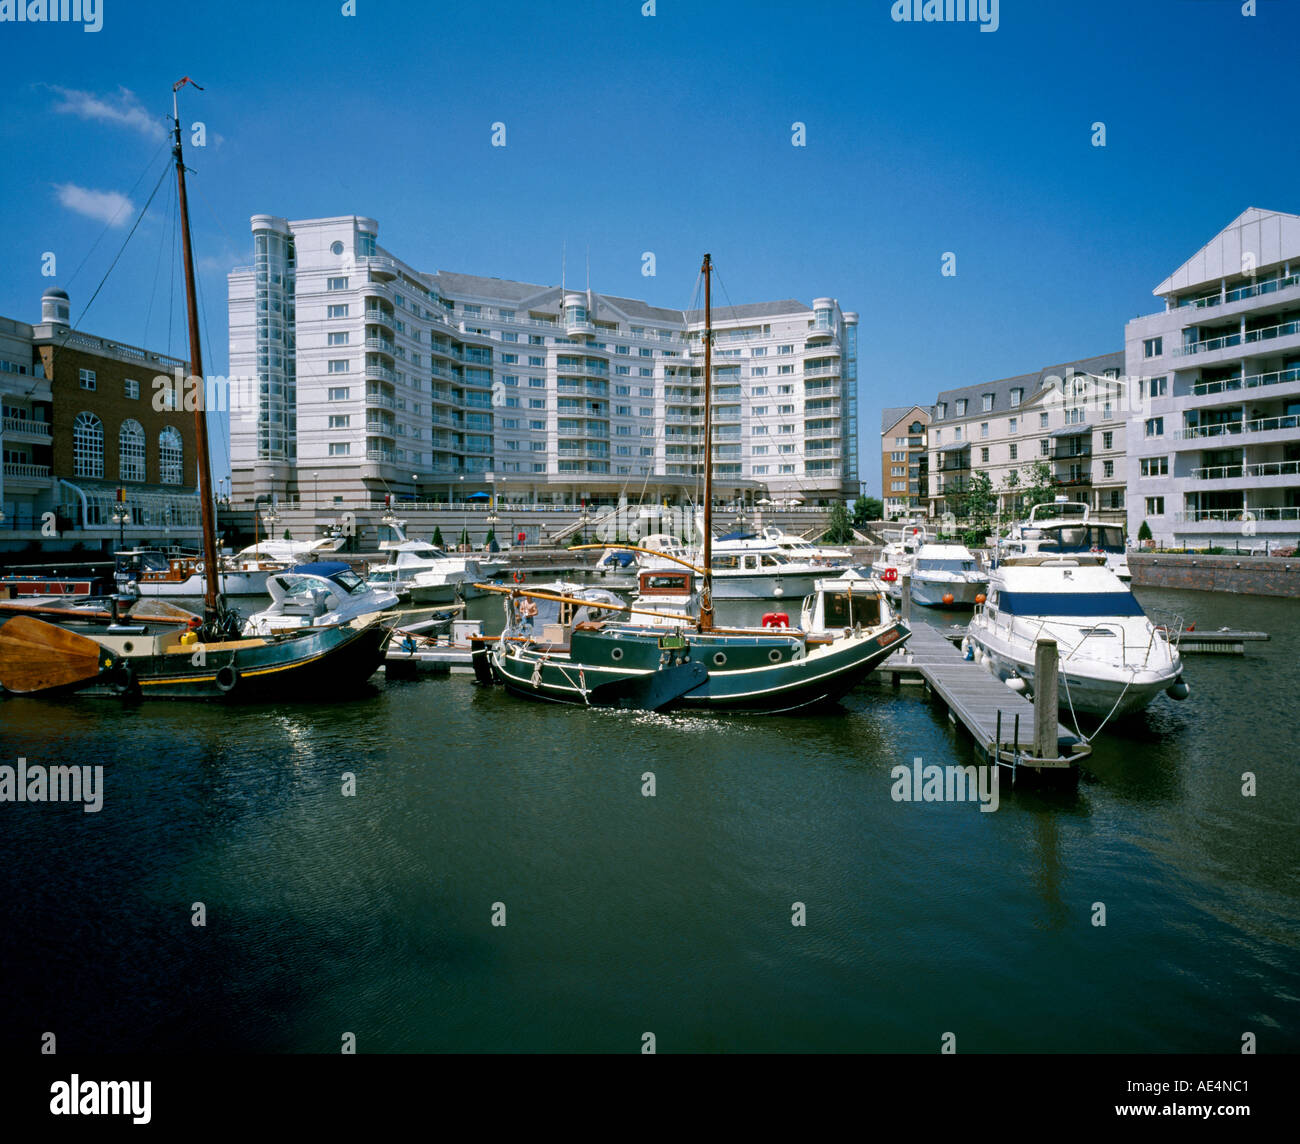 Conrad Hotel con barche e yacht in acqua a Chelsea Harbour marina London SW10 Inghilterra Foto Stock